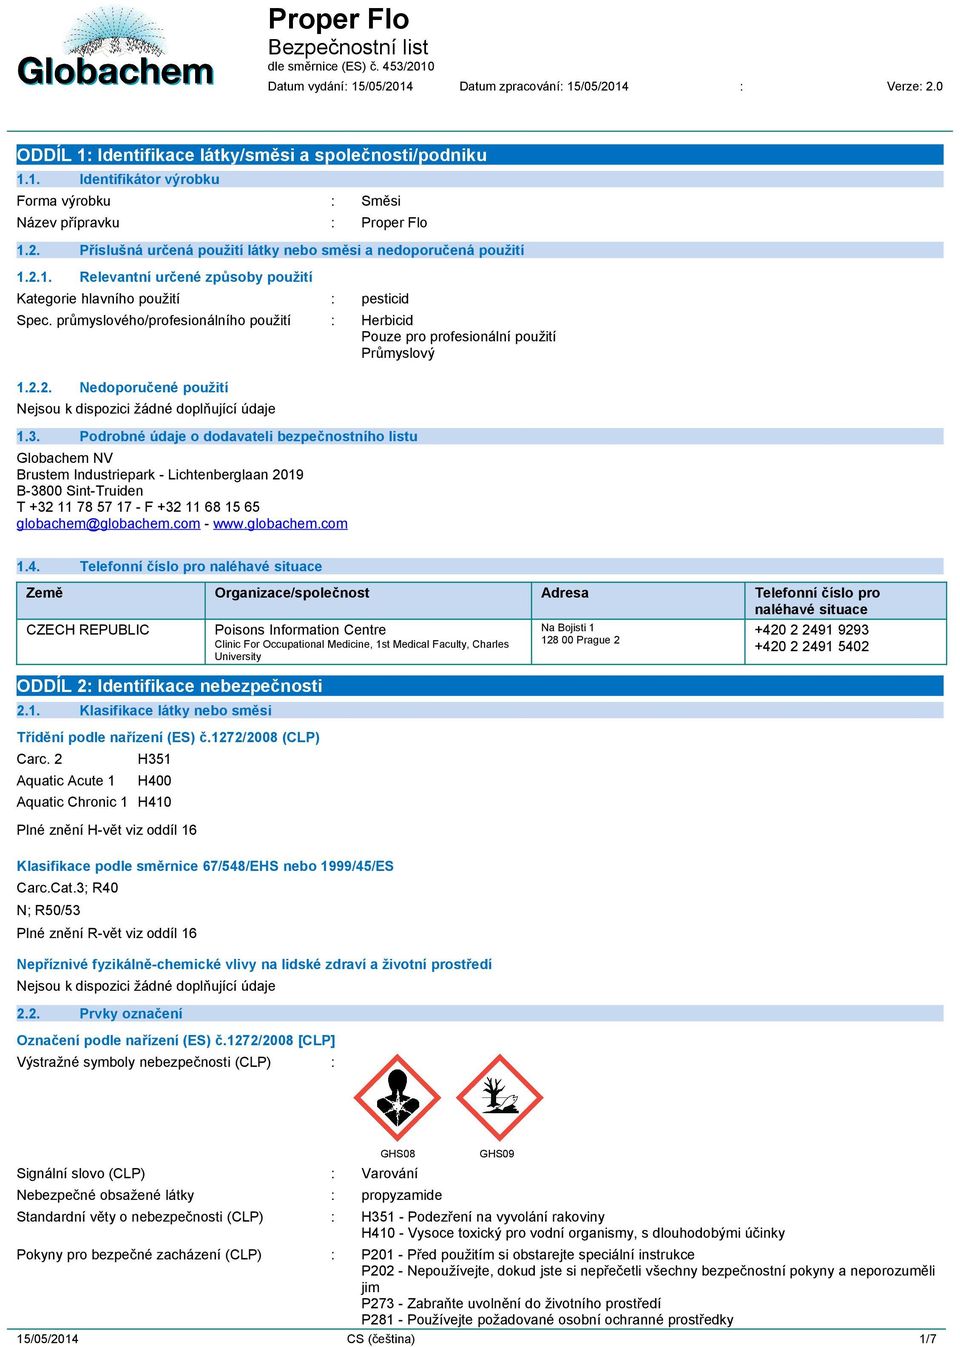 3. Podrobné údaje o dodavateli bezpečnostního listu Globachem NV Brustem Industriepark - Lichtenberglaan 2019 B-3800 Sint-Truiden T +32 11 78 57 17 - F +32 11 68 15 65 globachem@globachem.com - www.